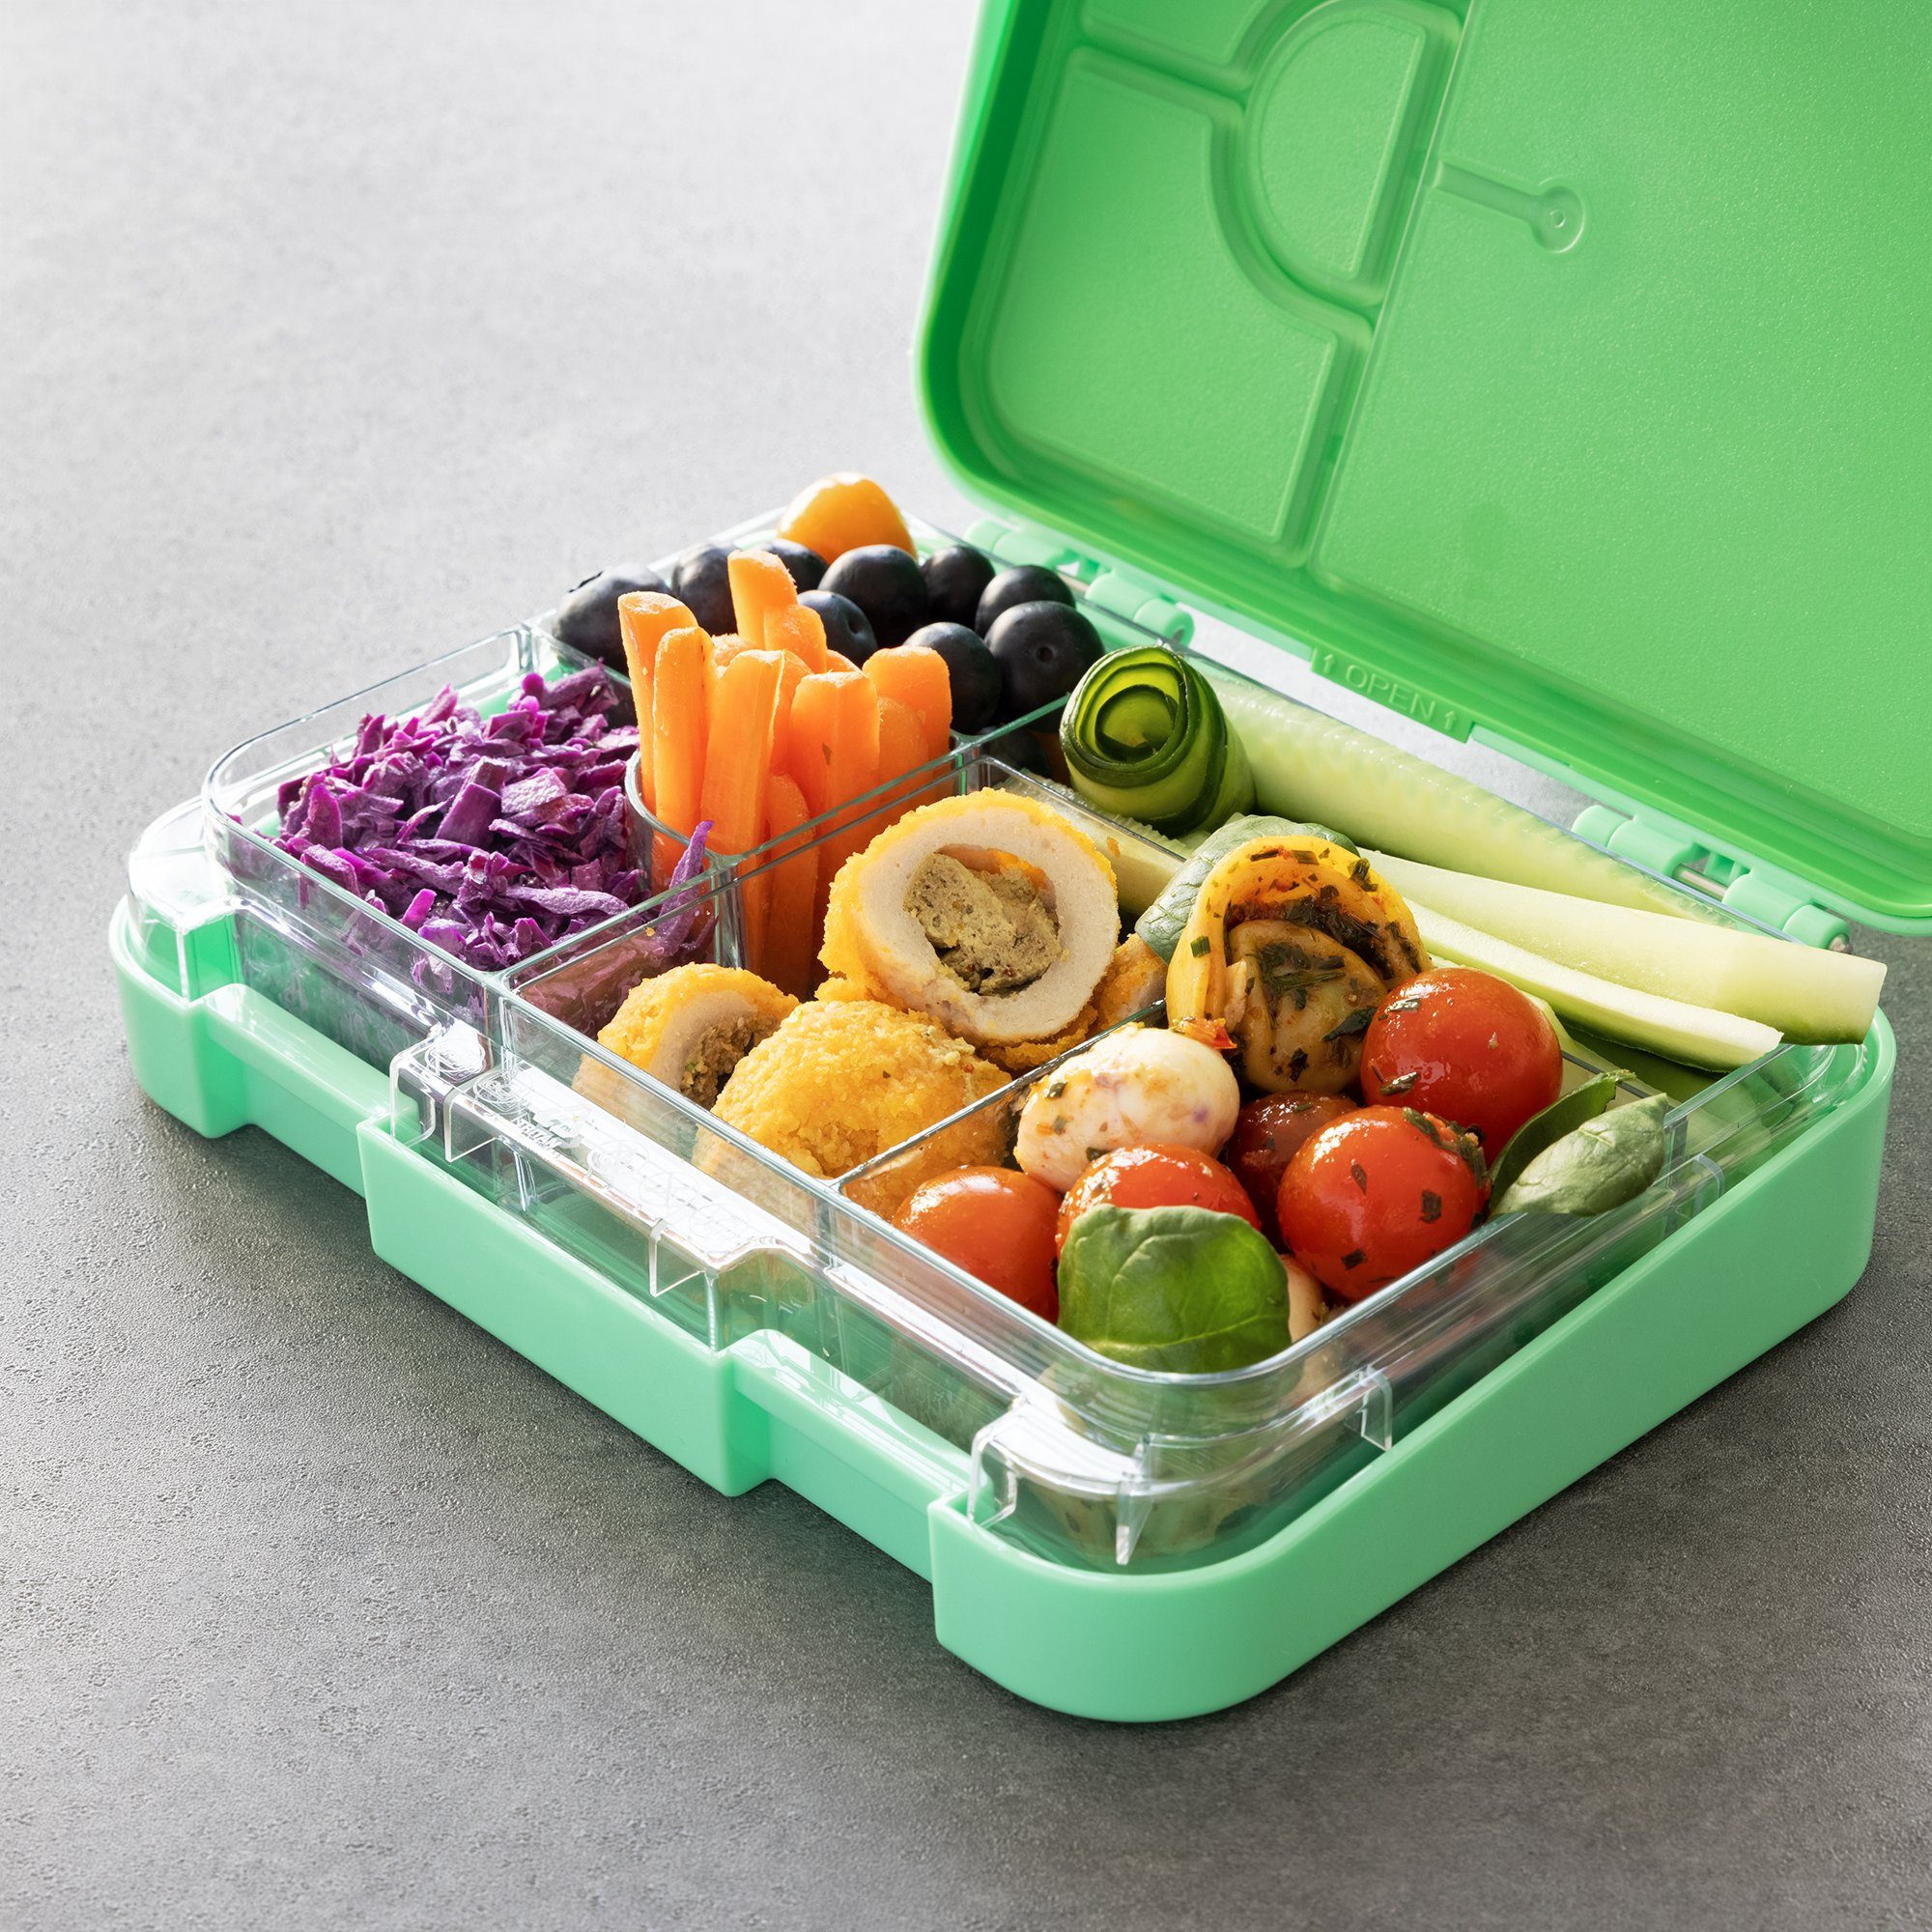 Fächern, Kunststoff mit Lunch auslaufsicher Grün Navaris Lunchbox Vesperbox Bento Box Box Brotdose -